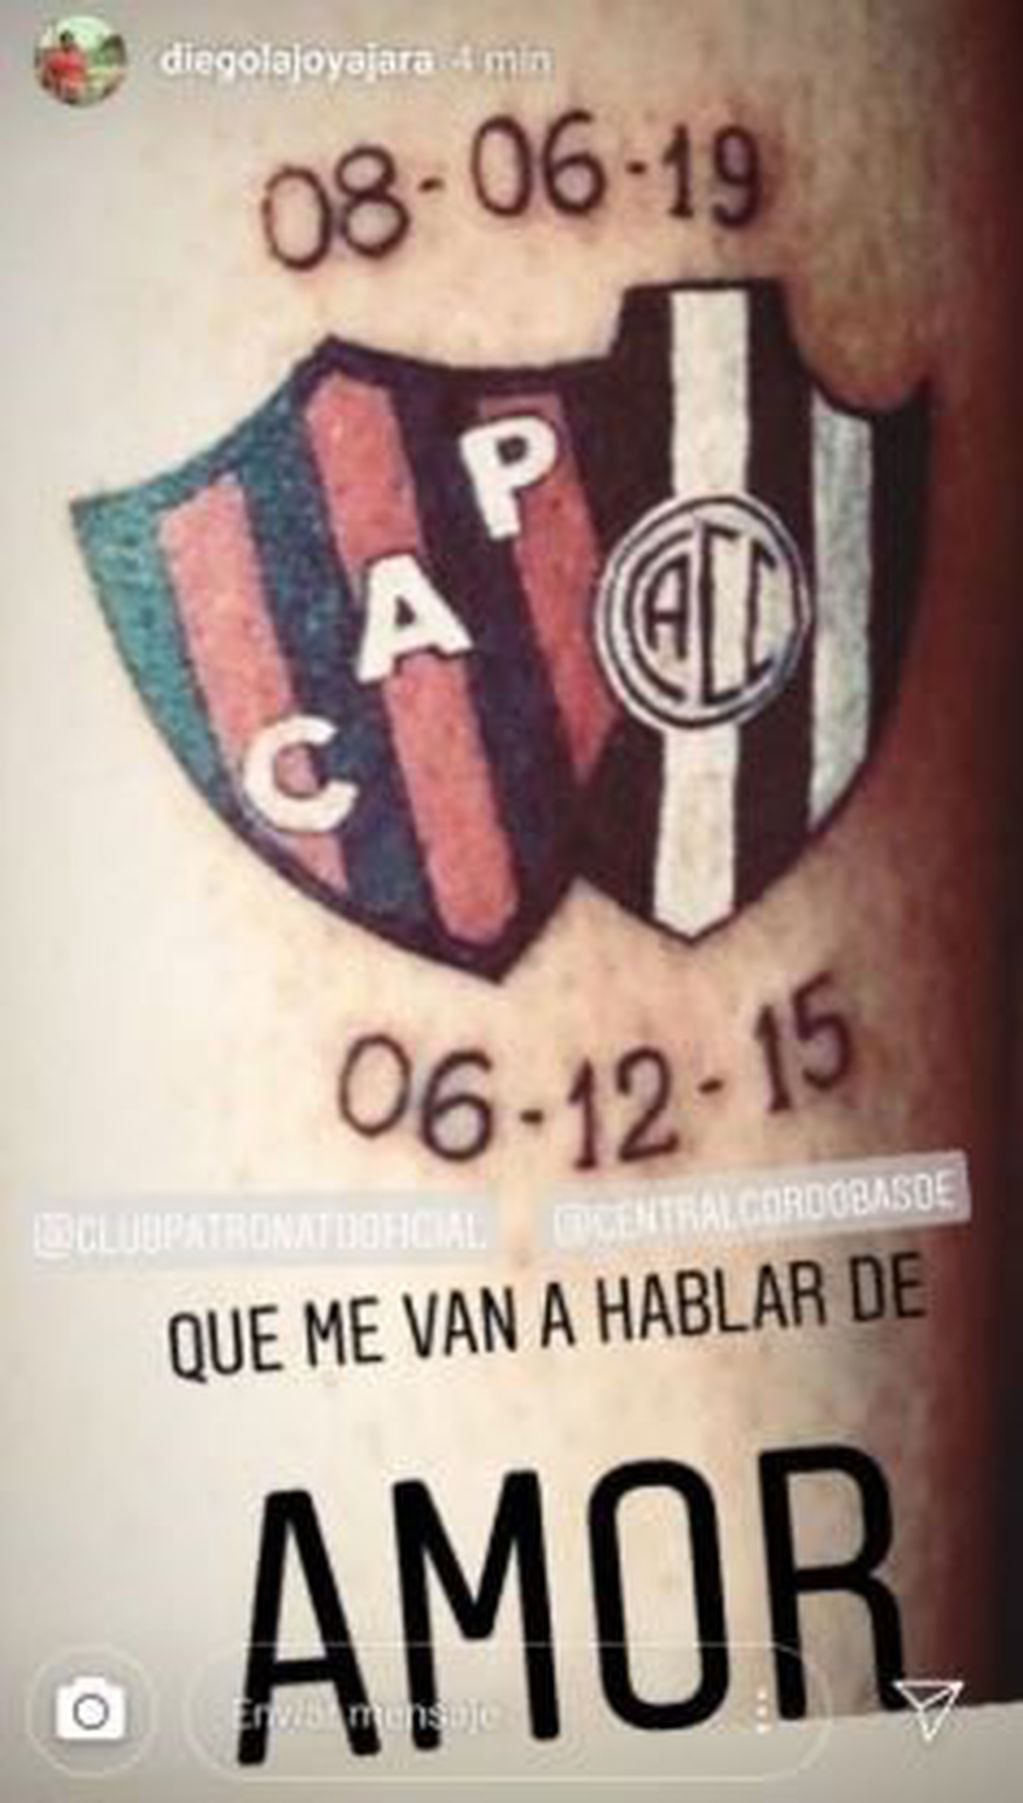 El tatuaje de Diego Jara (Foto: Instagram/diegolajoyajara).